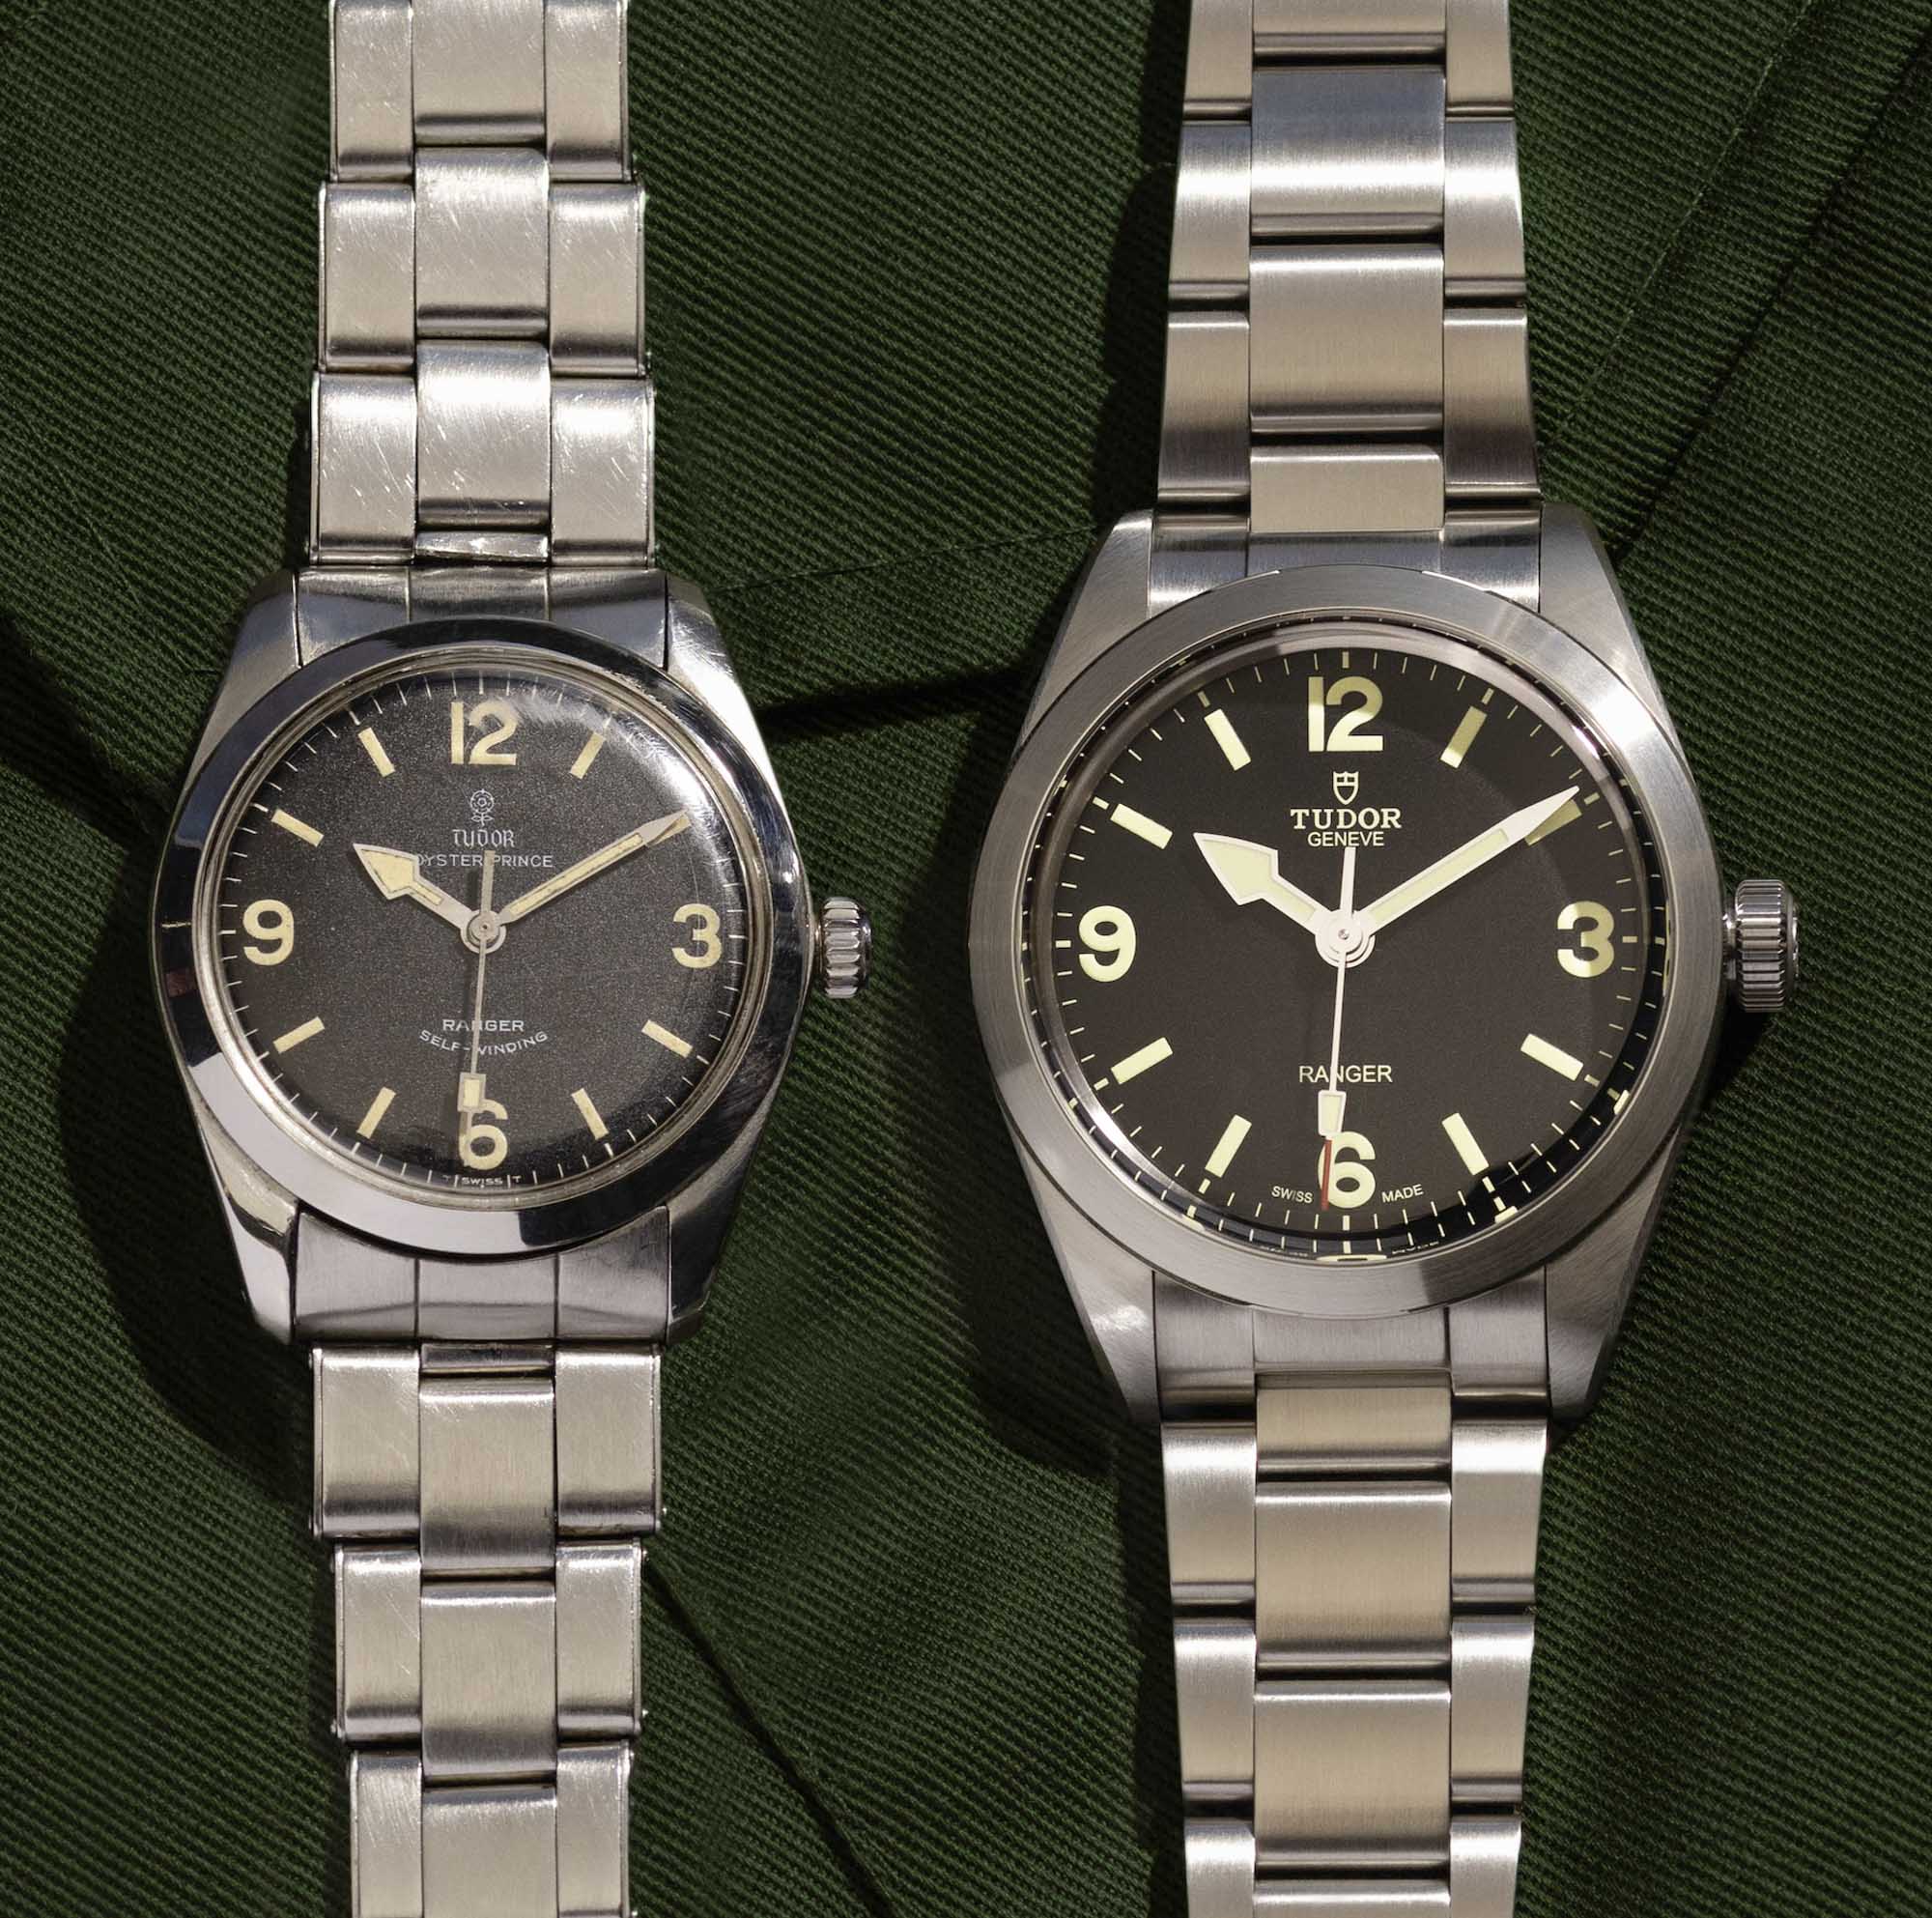 帝舵游侠79950手表系列是复古探索共鸣复兴的代表作